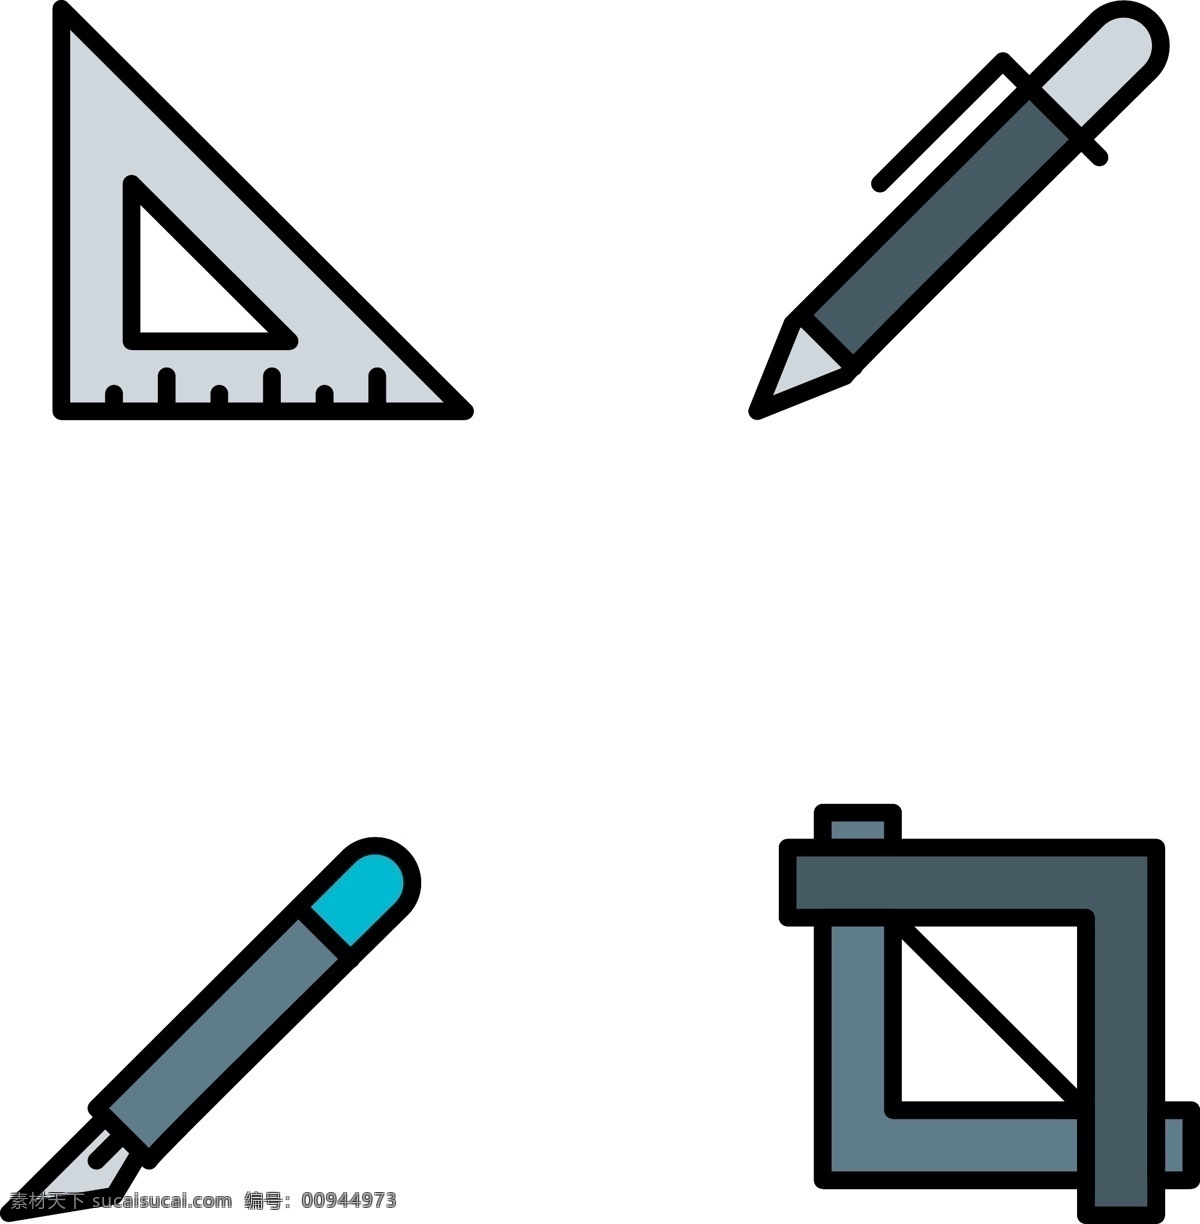 简约 文具 工具 学习 相关 图标 学习用品 三角尺 铅笔 美工刀 直角尺 免抠 png格式 可分开使用